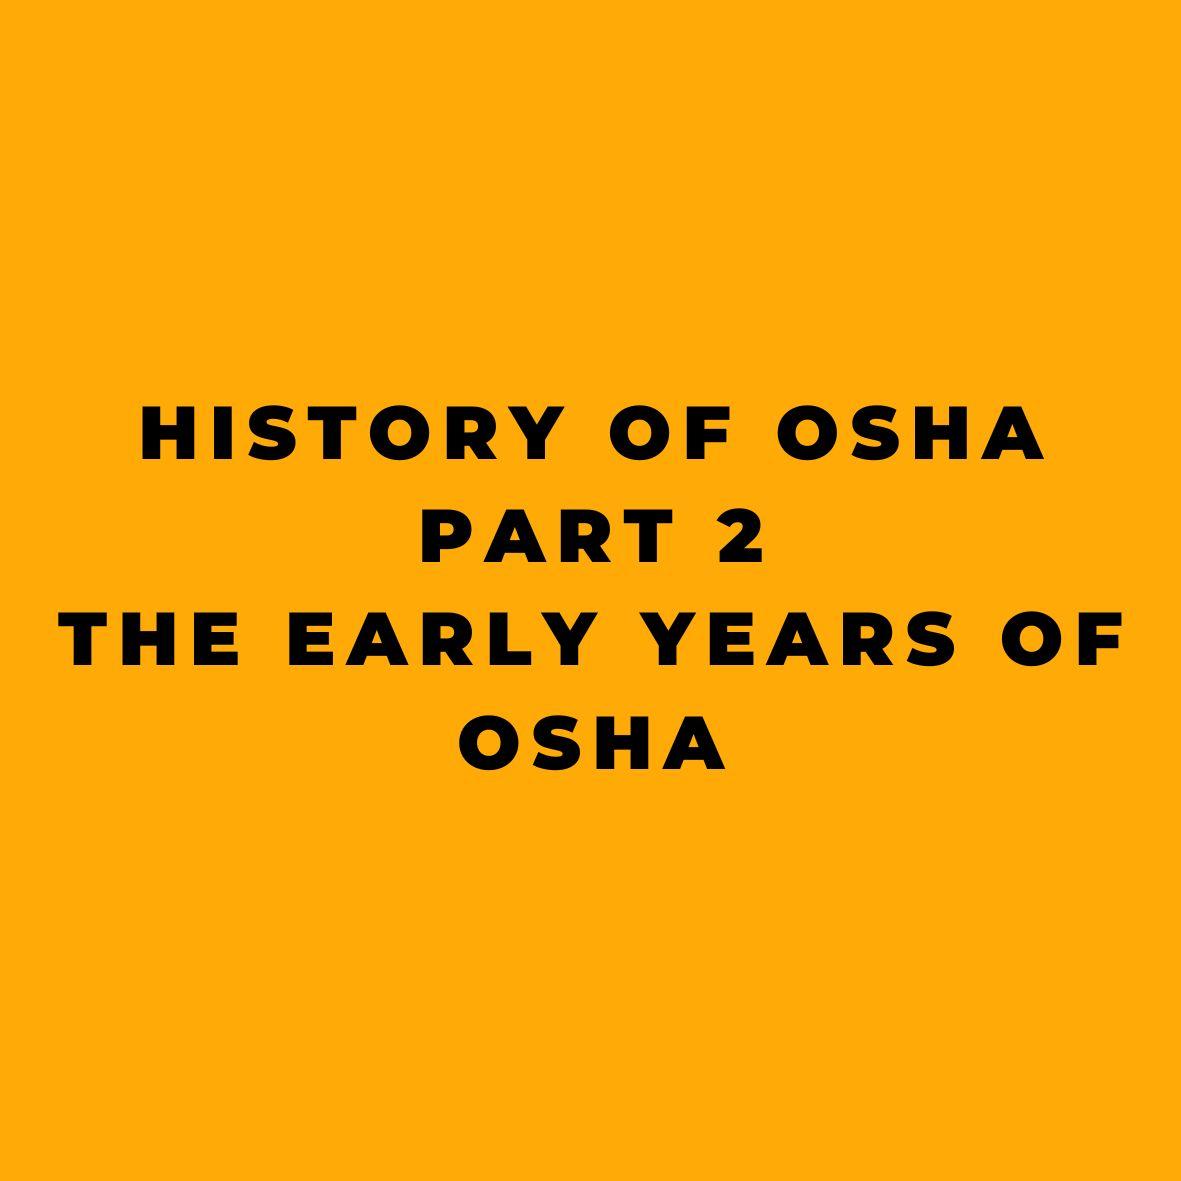 History of OSHA - Part 2 - The Early Years of OSHA